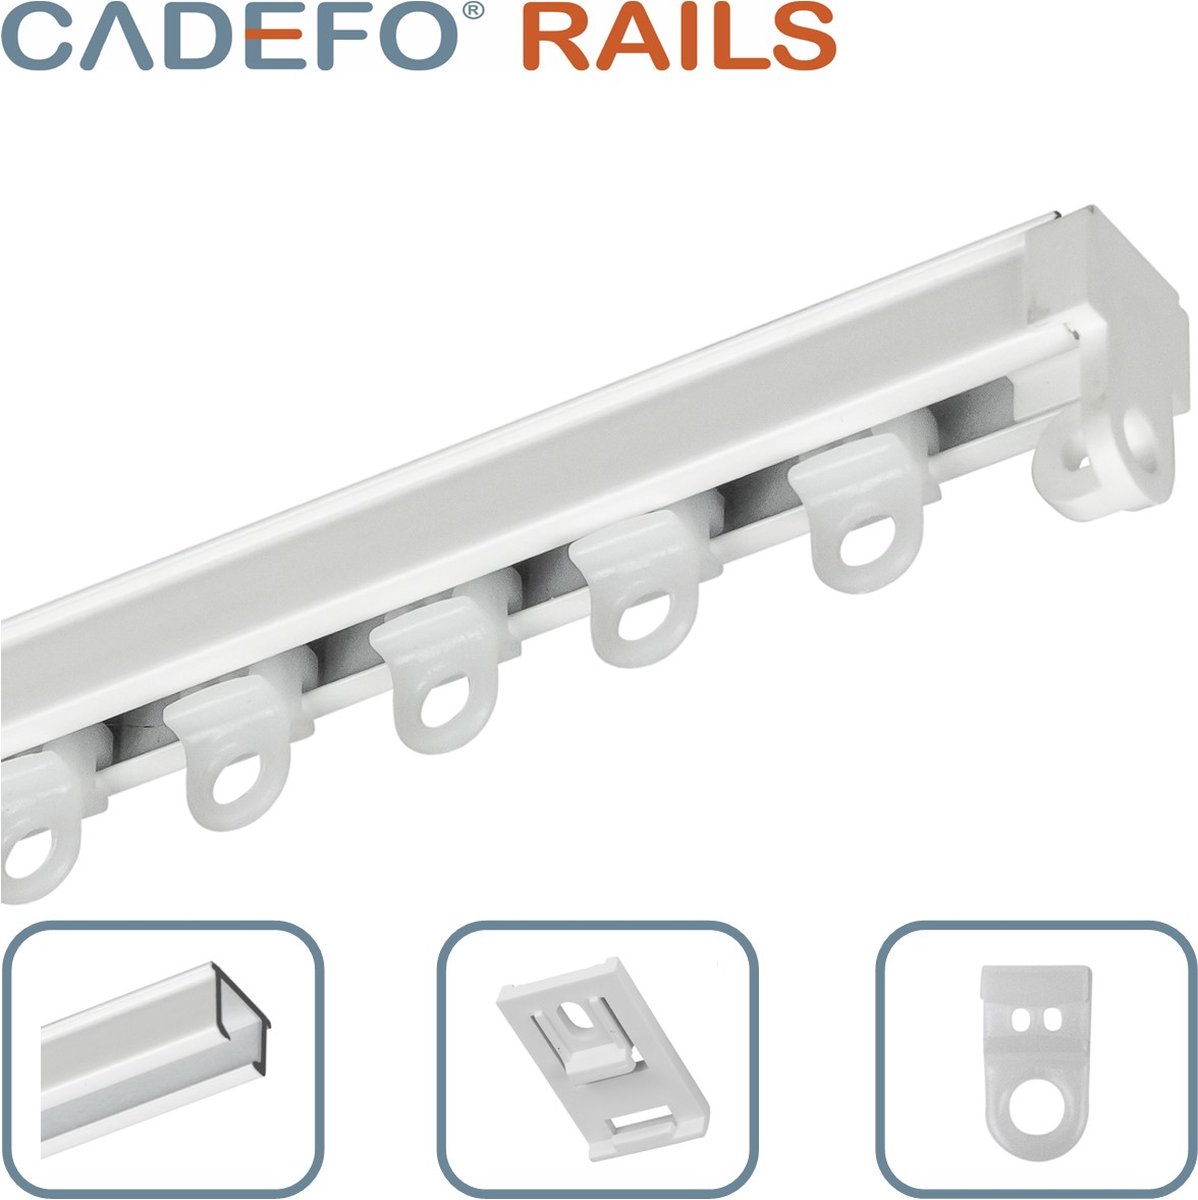 CADEFO RAILS (151 - 200 cm) Gordijnrails - Compleet op maat! - UIT 1 STUK - Leverbaar tot 6 meter - Plafondbevestiging - Lengte 158 cm